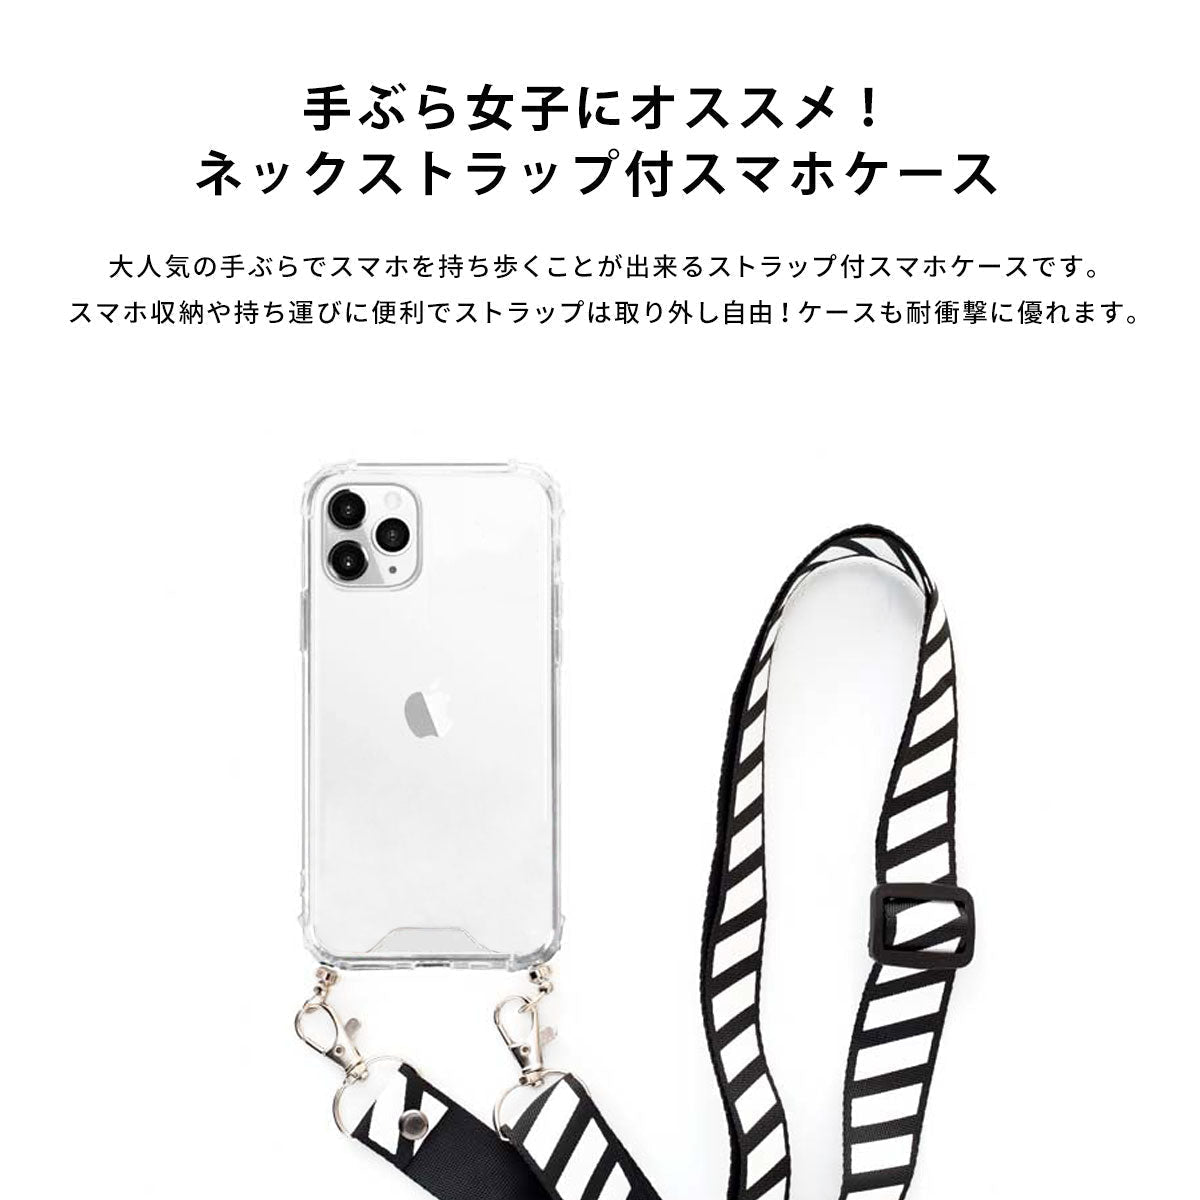 【手ぶら派に】ネックストラップ スマホケース  iPhone13 iPone12 かわいい おしゃれ  ネックストラップ付き 星 電球 名入れ